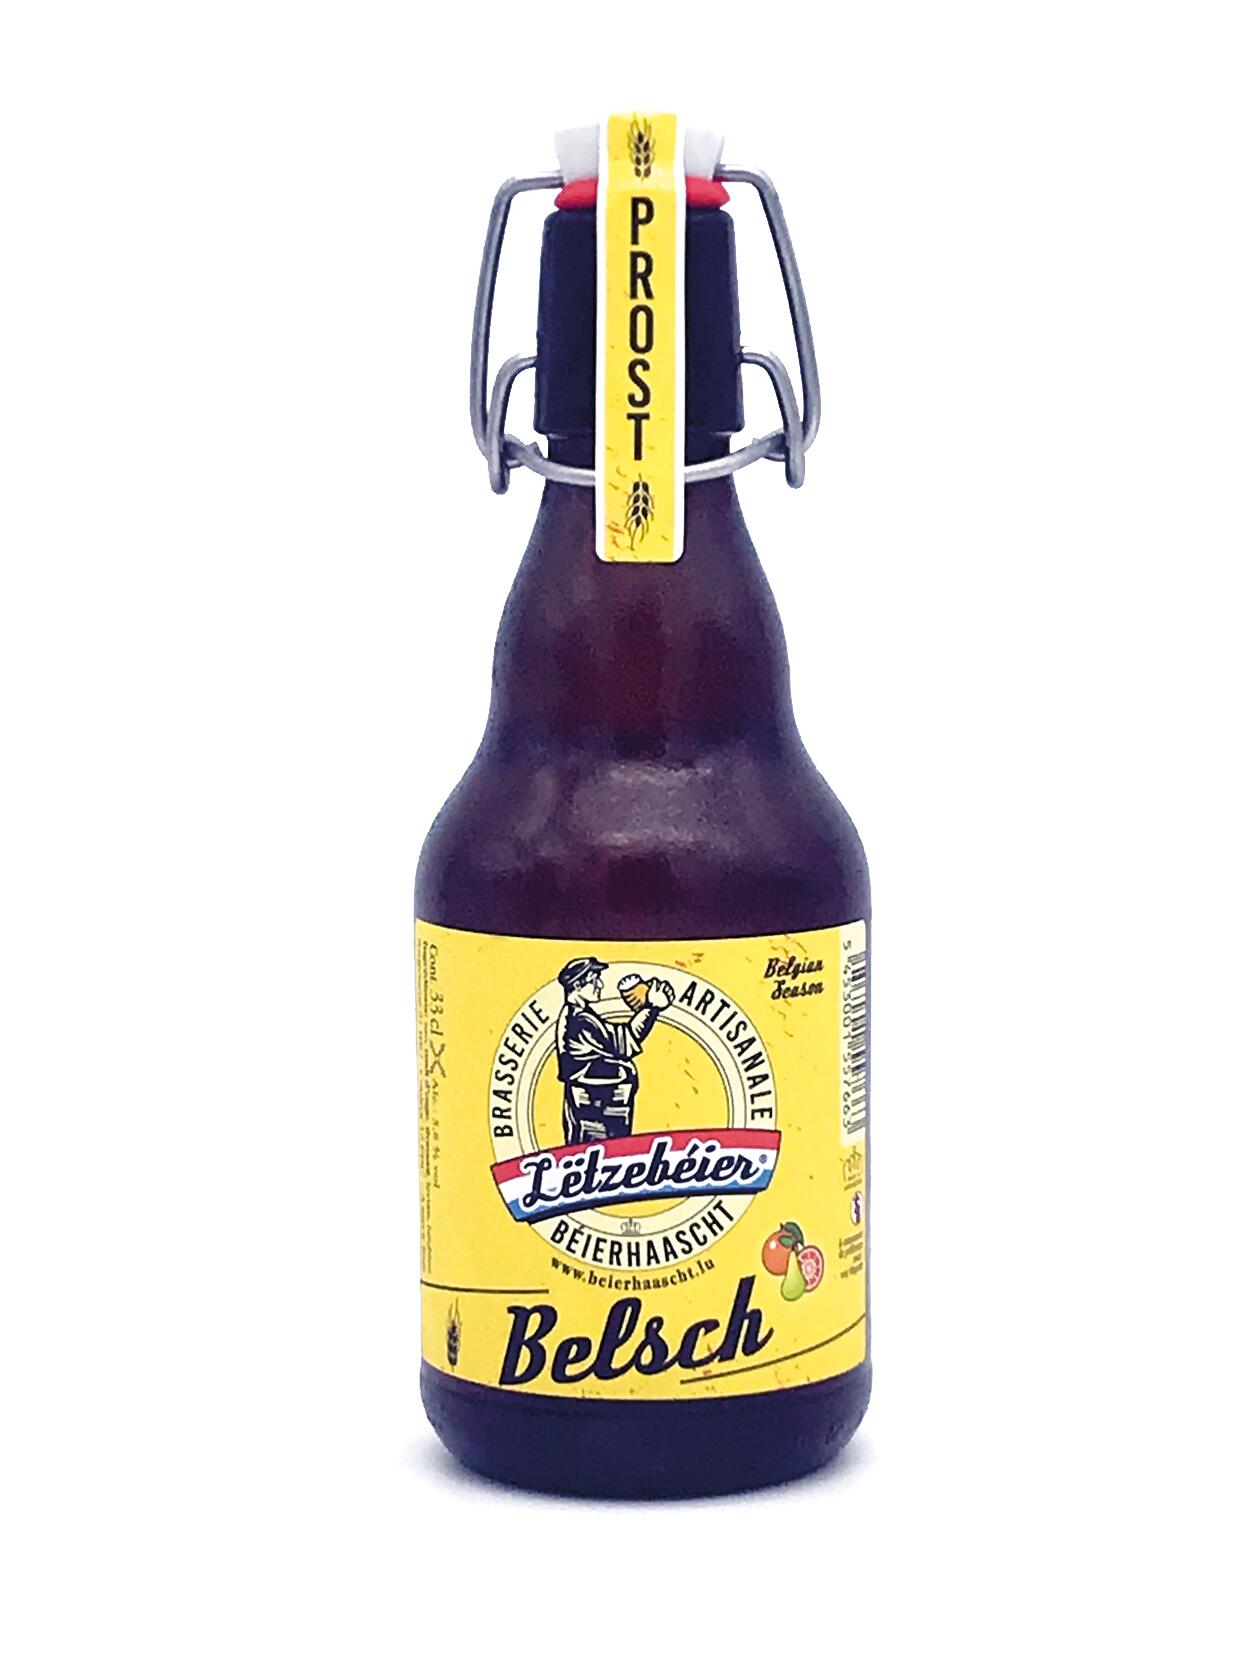 Lëtzebéier BELSCH, light beer Type Blanche, Béierhaascht